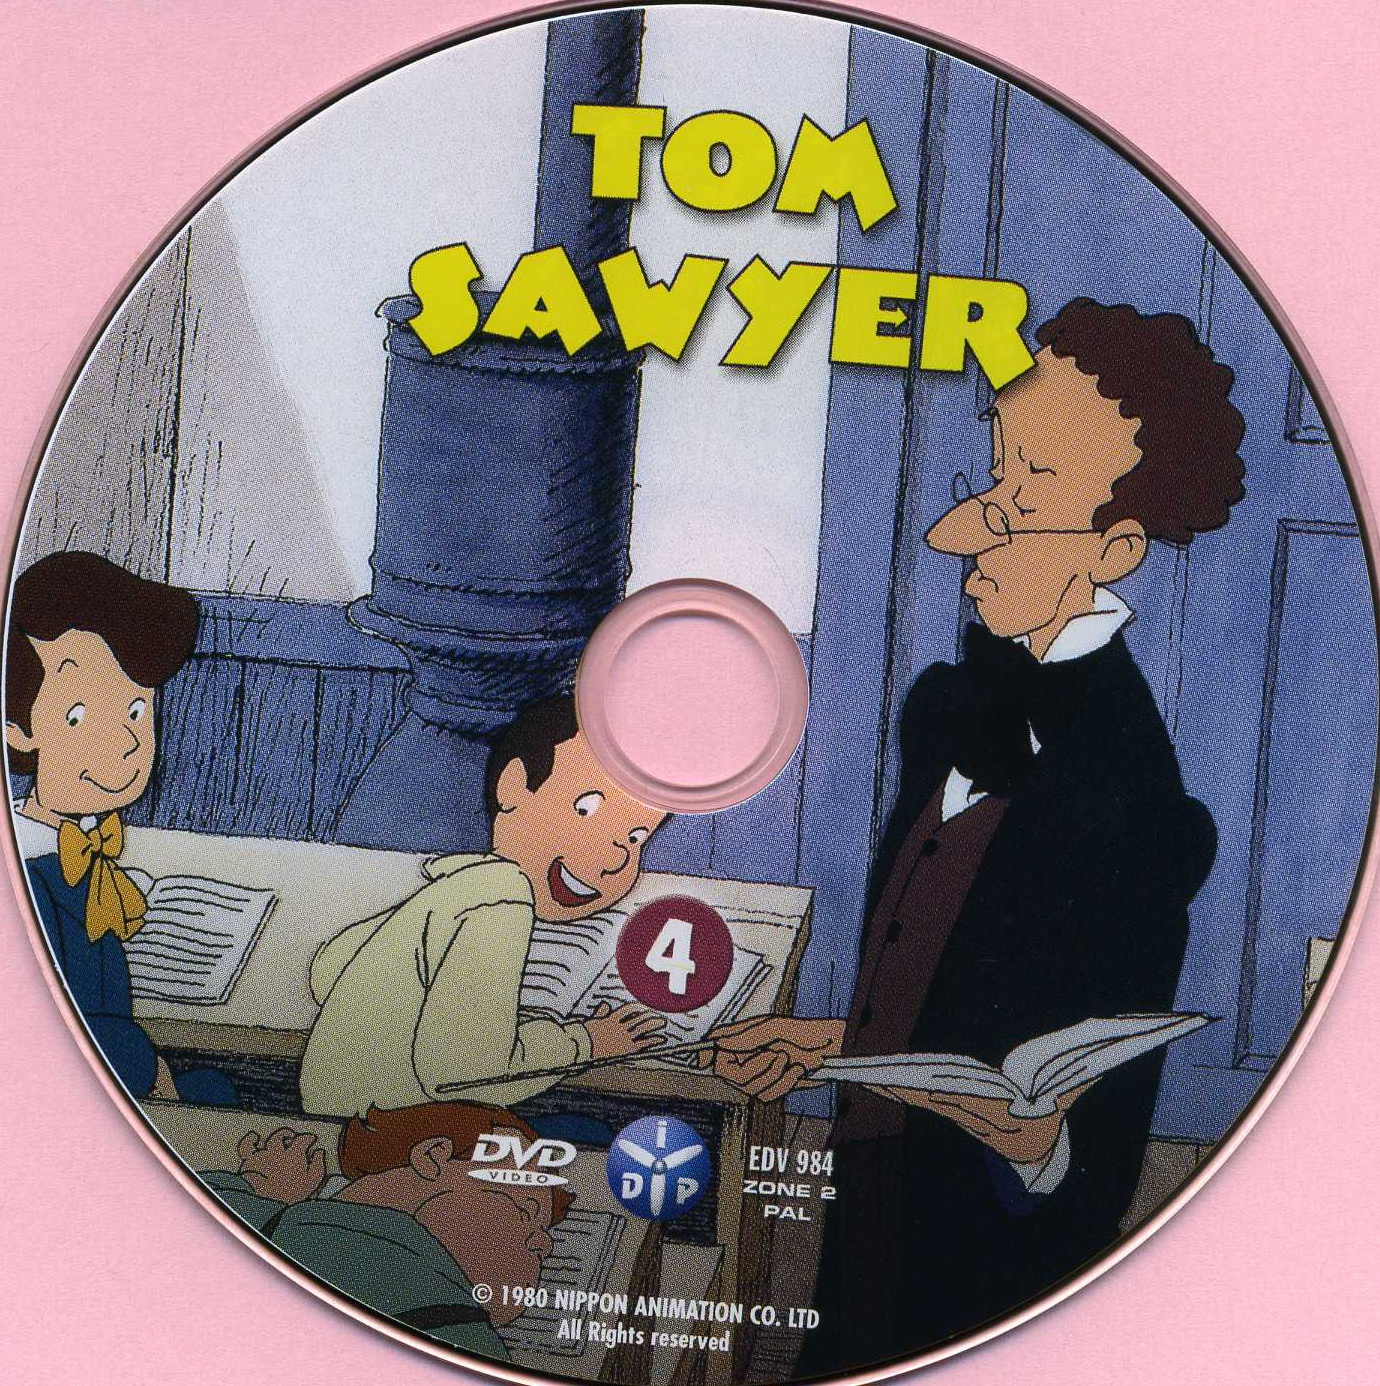 Tom Sawyer vol 4